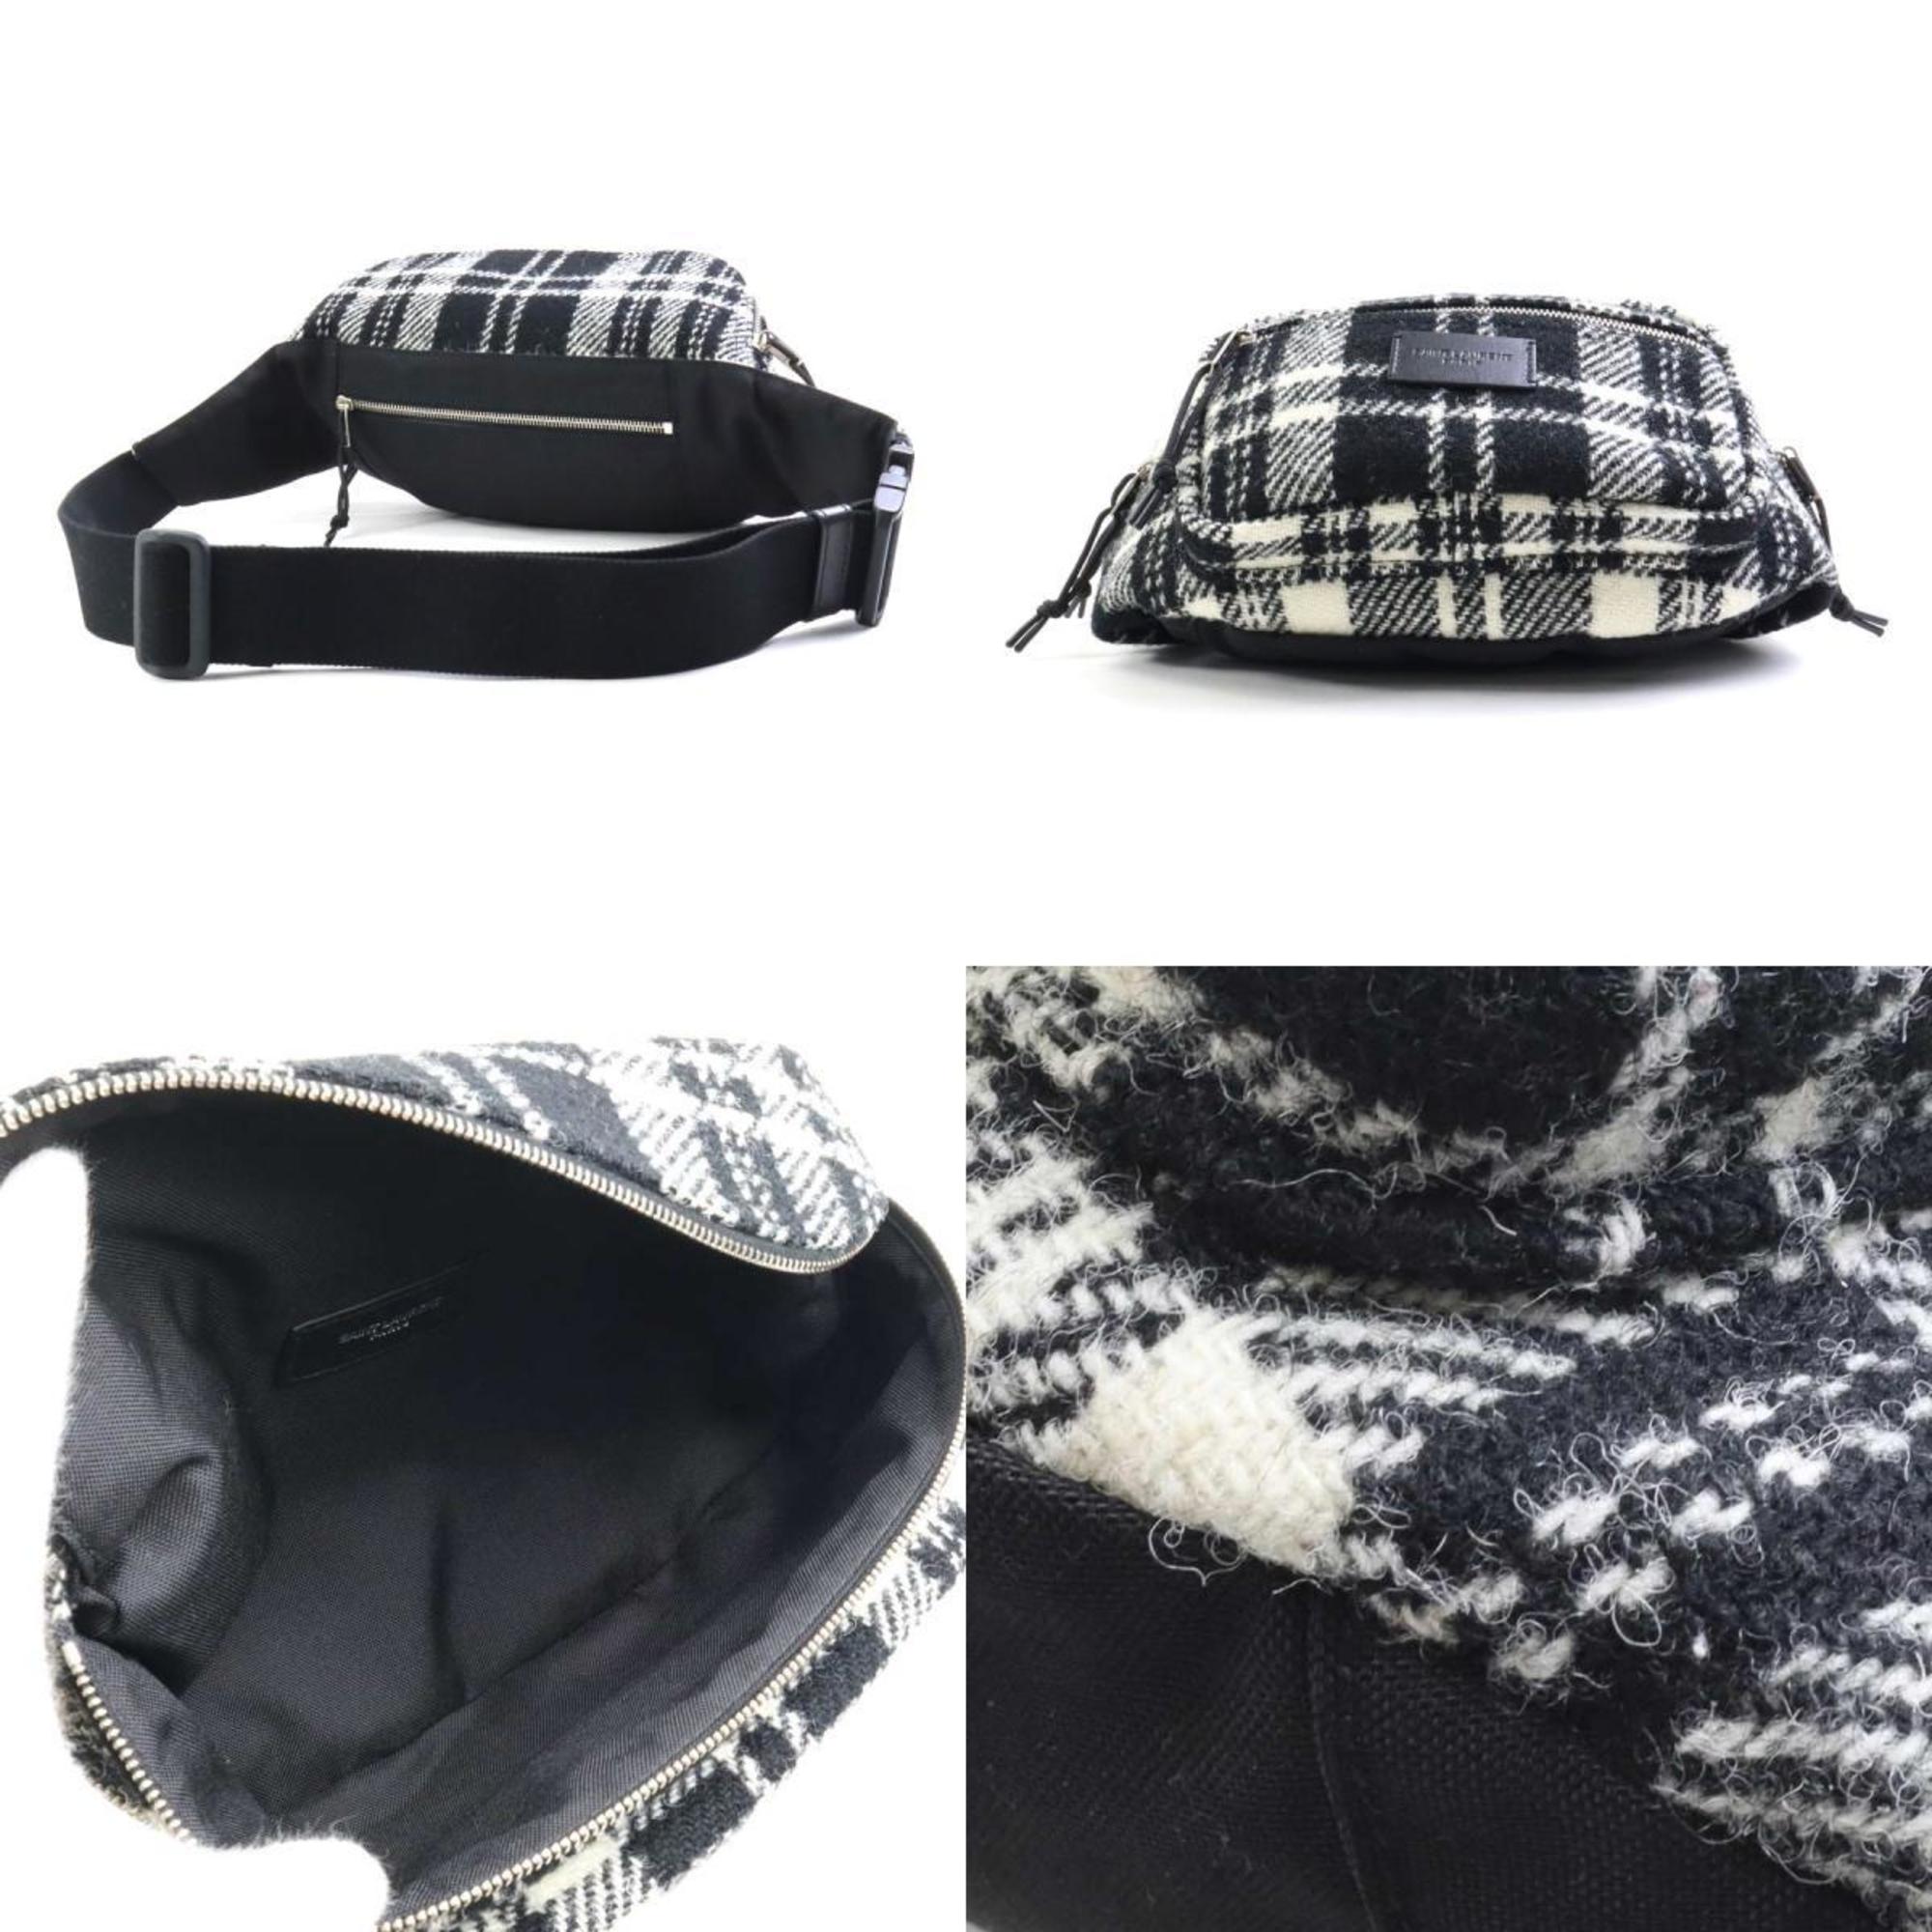 Saint Laurent SAINT LAURENT Body Bag Waist Pouch Wool Black x White Unisex 581375